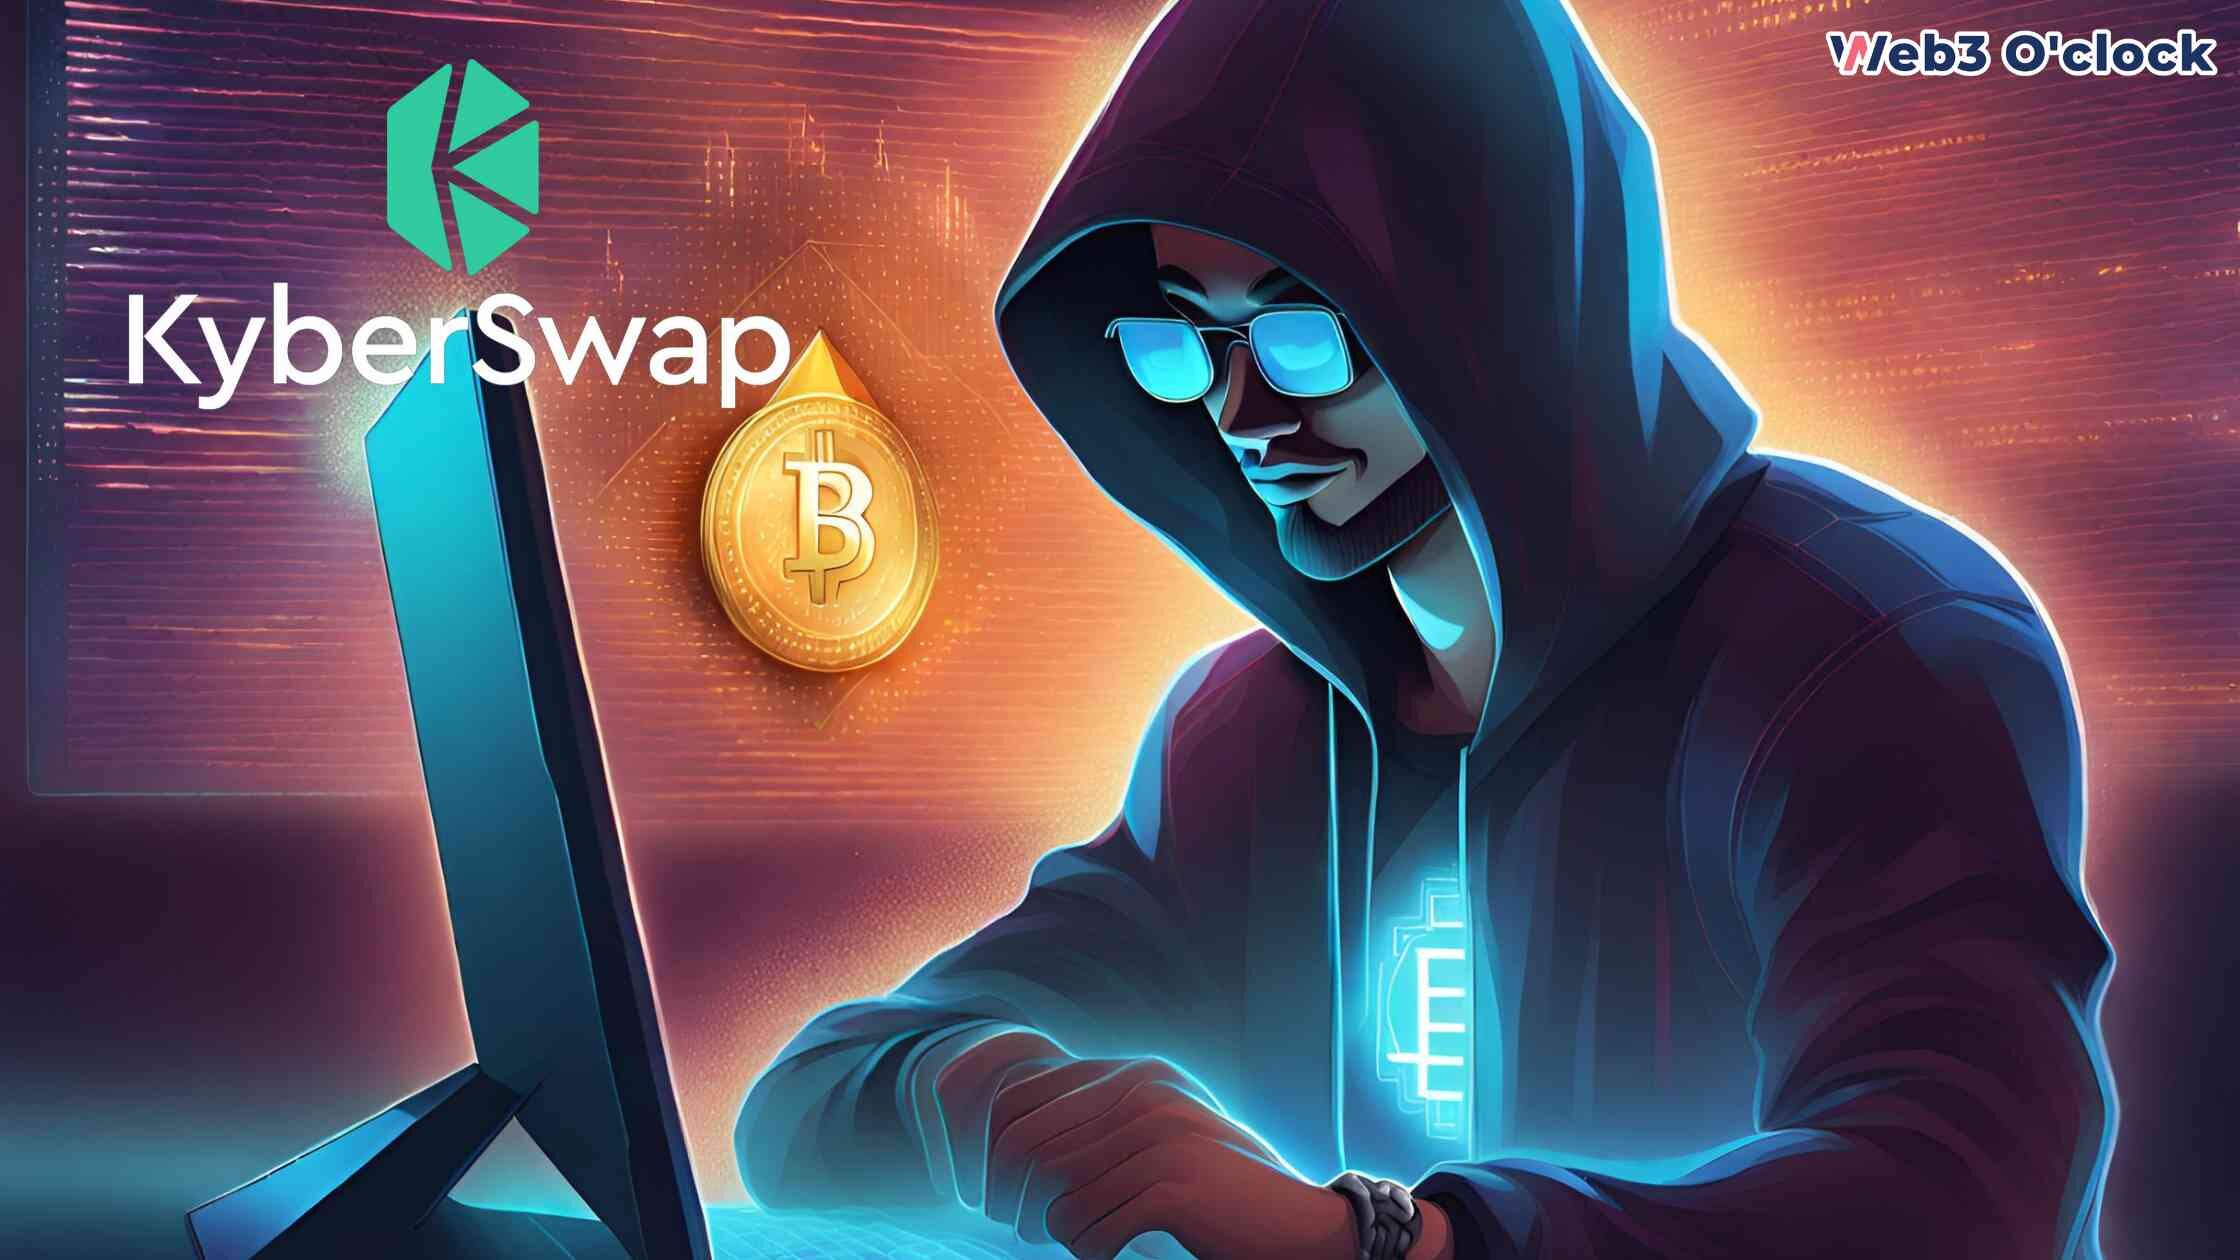 KyberSwap Offers $4.6M Bounty by Web3o'clock